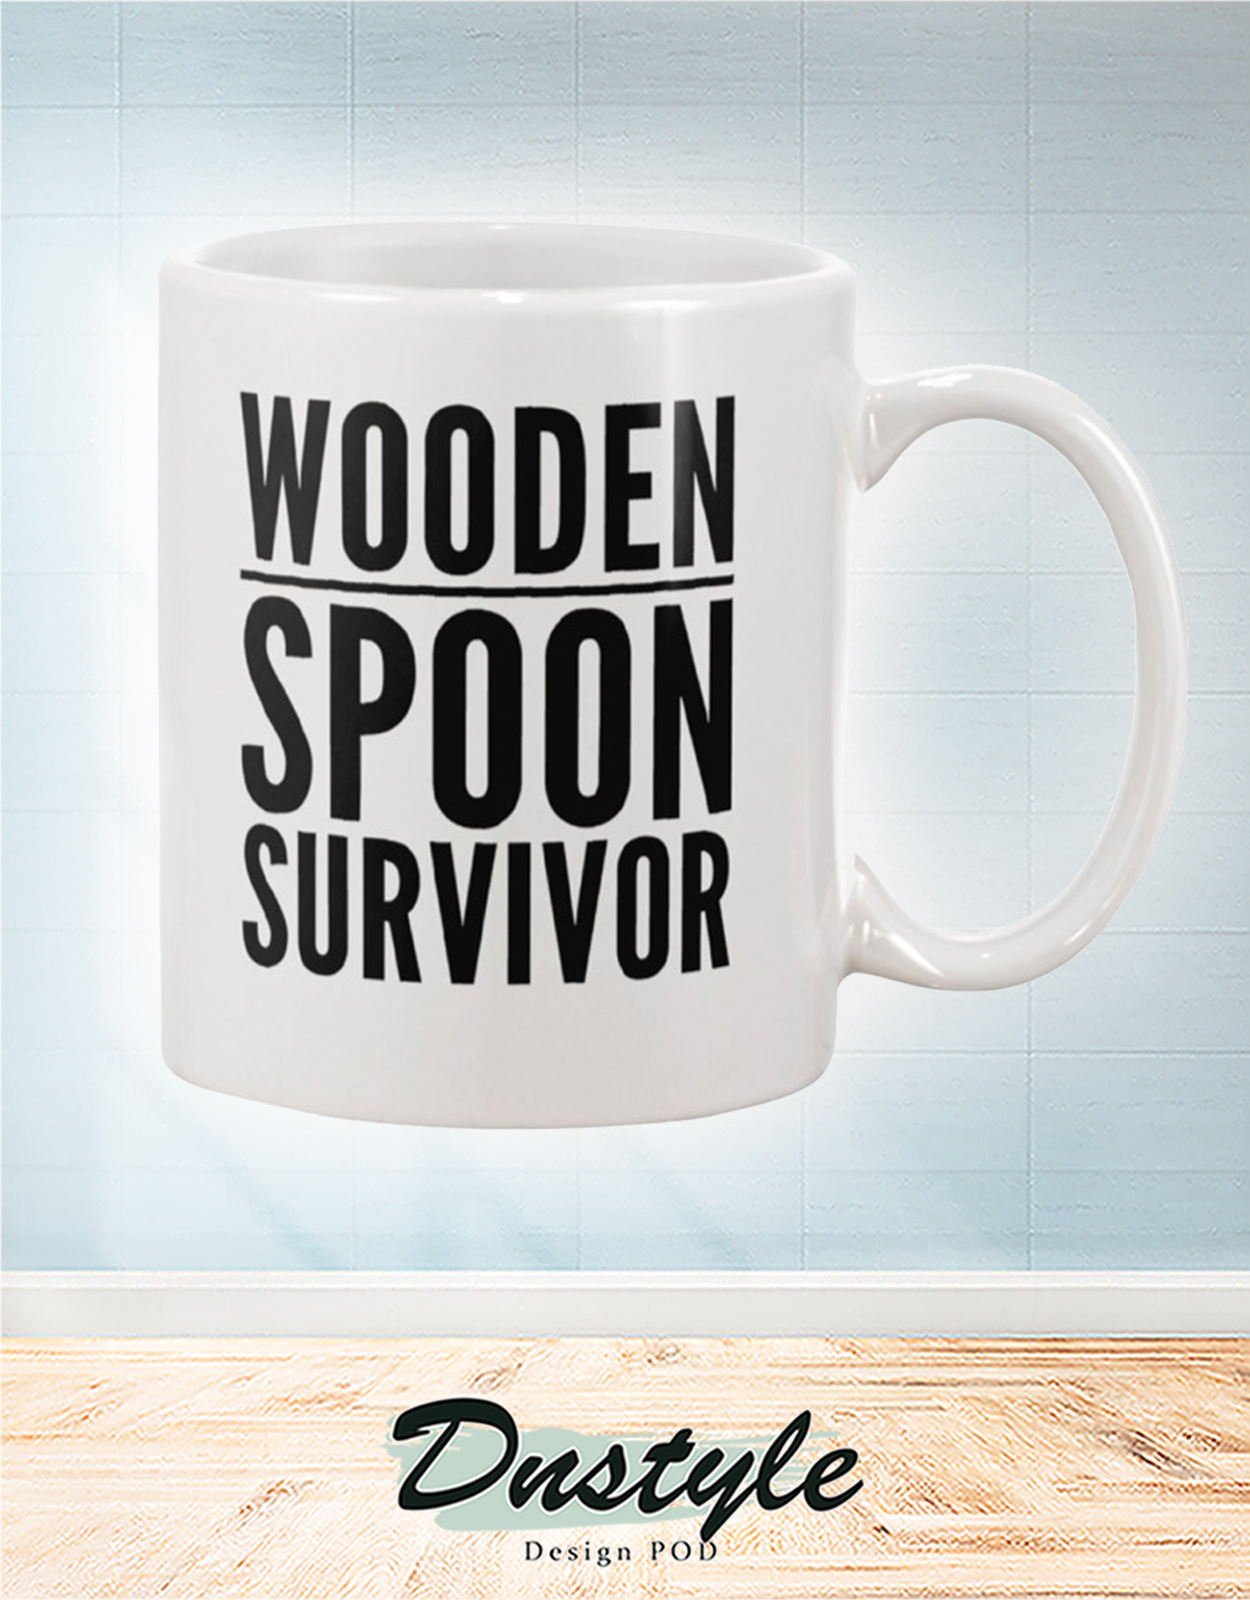 Wooden spoon survivor mug 2